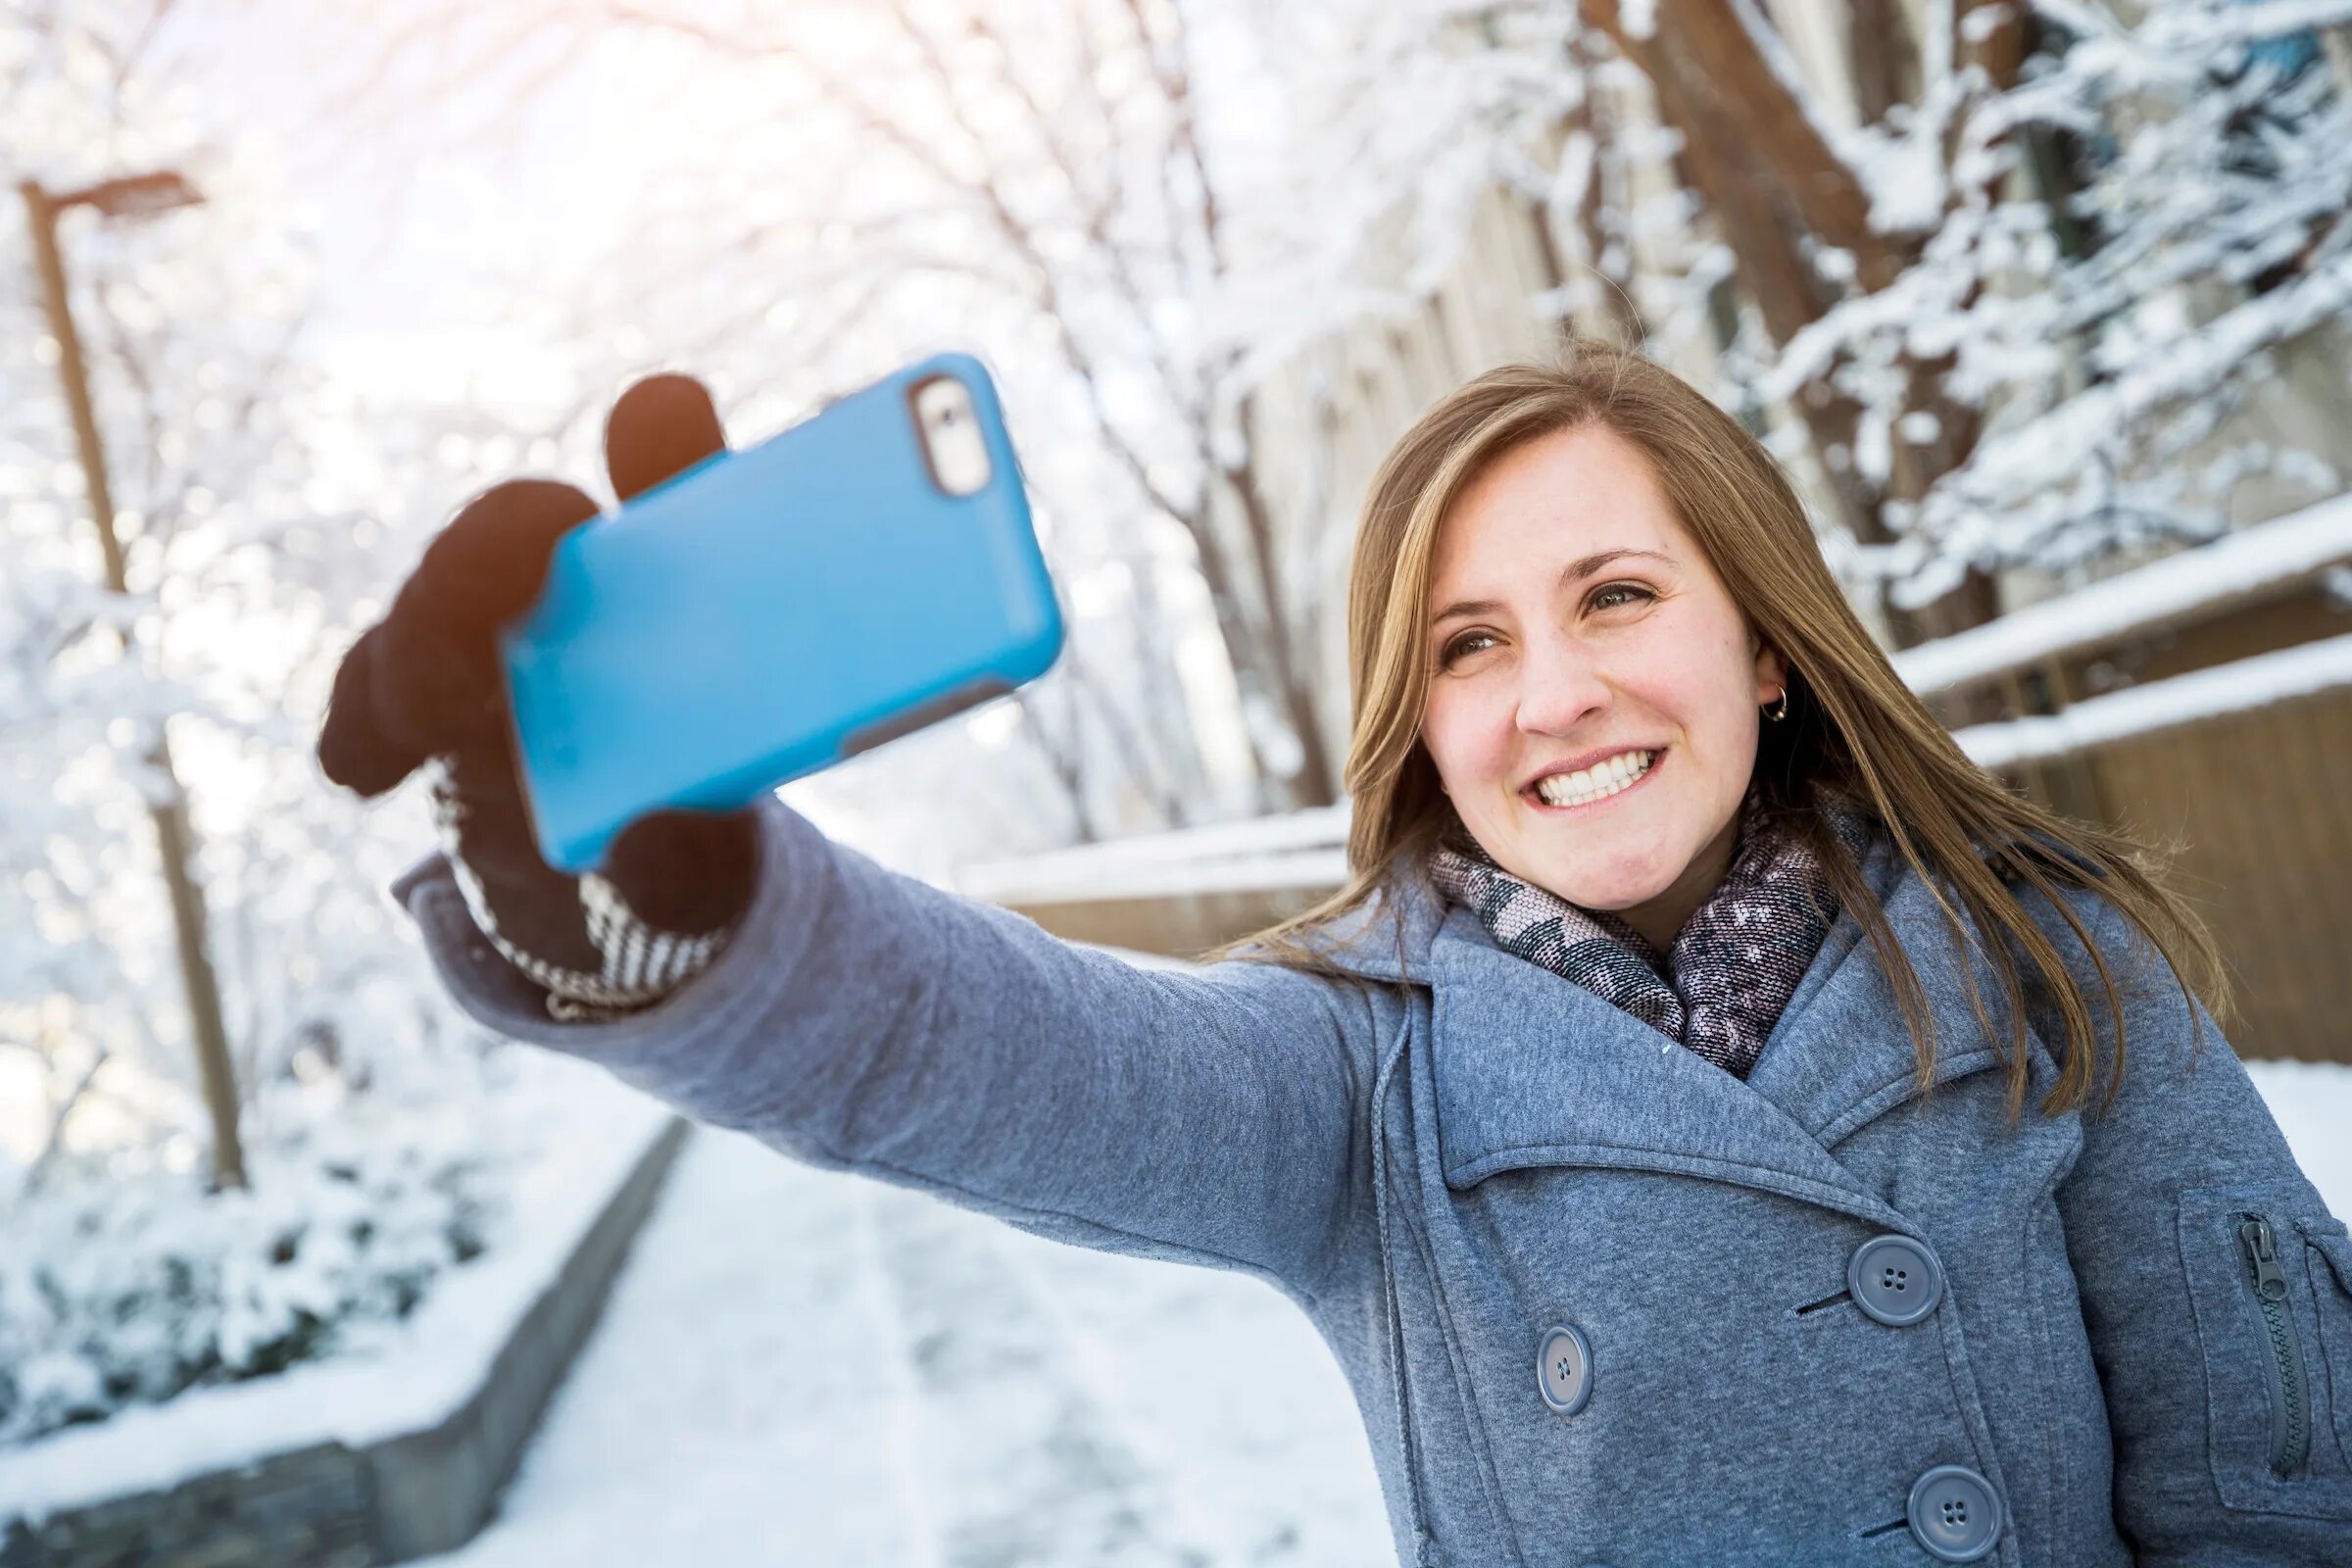 Selfie peg. Селфи. Девушка со смартфоном. Делает селфи. Фото селфи.